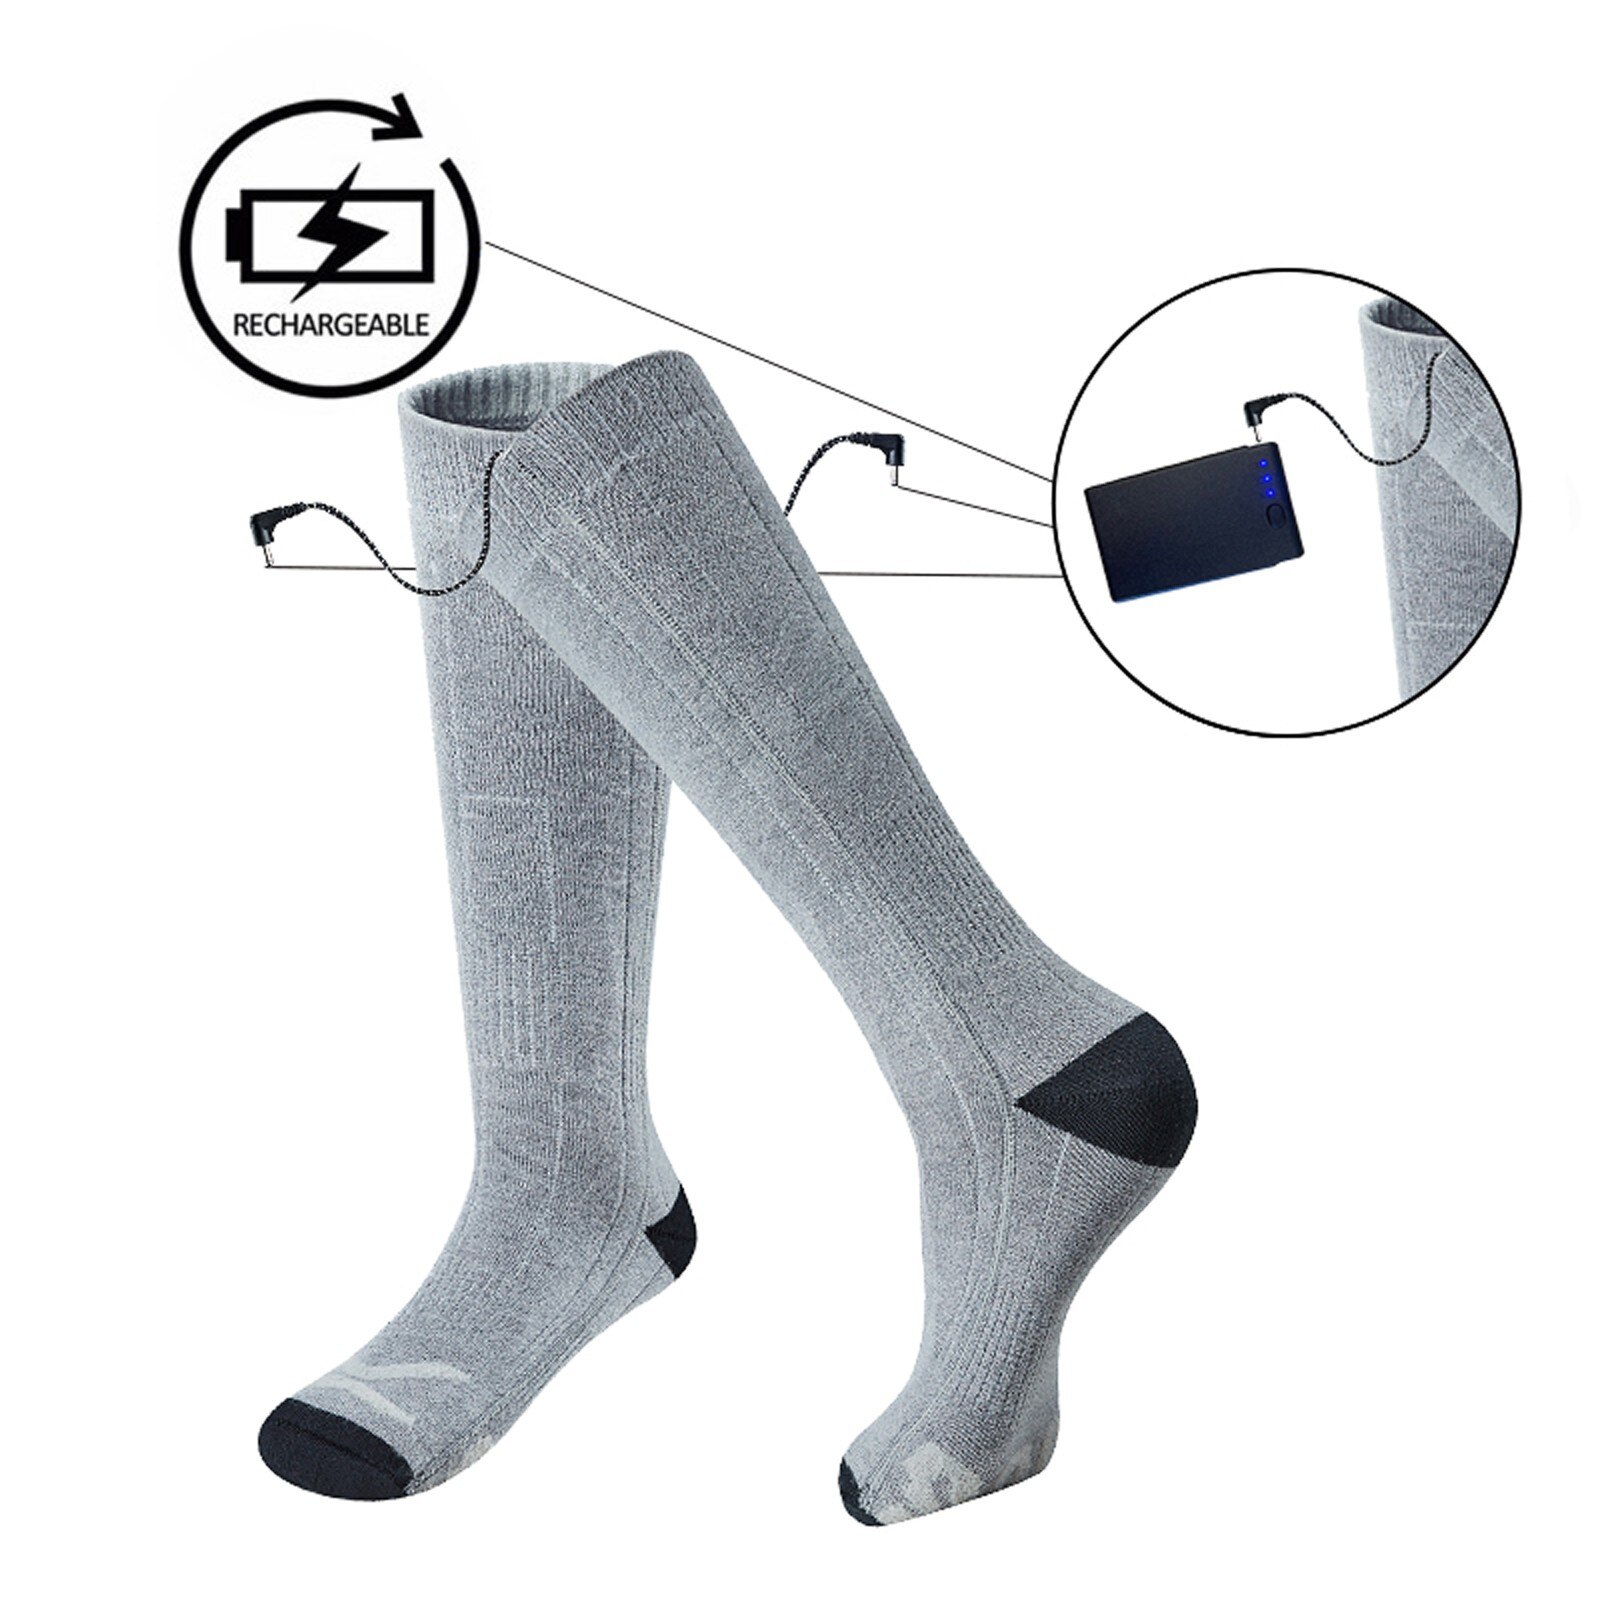 Calzino riscaldante tre modalità elastico confortevole resistente elettrico calzino caldo Set calzini riscaldati ricaricabili per uomo donna # G30